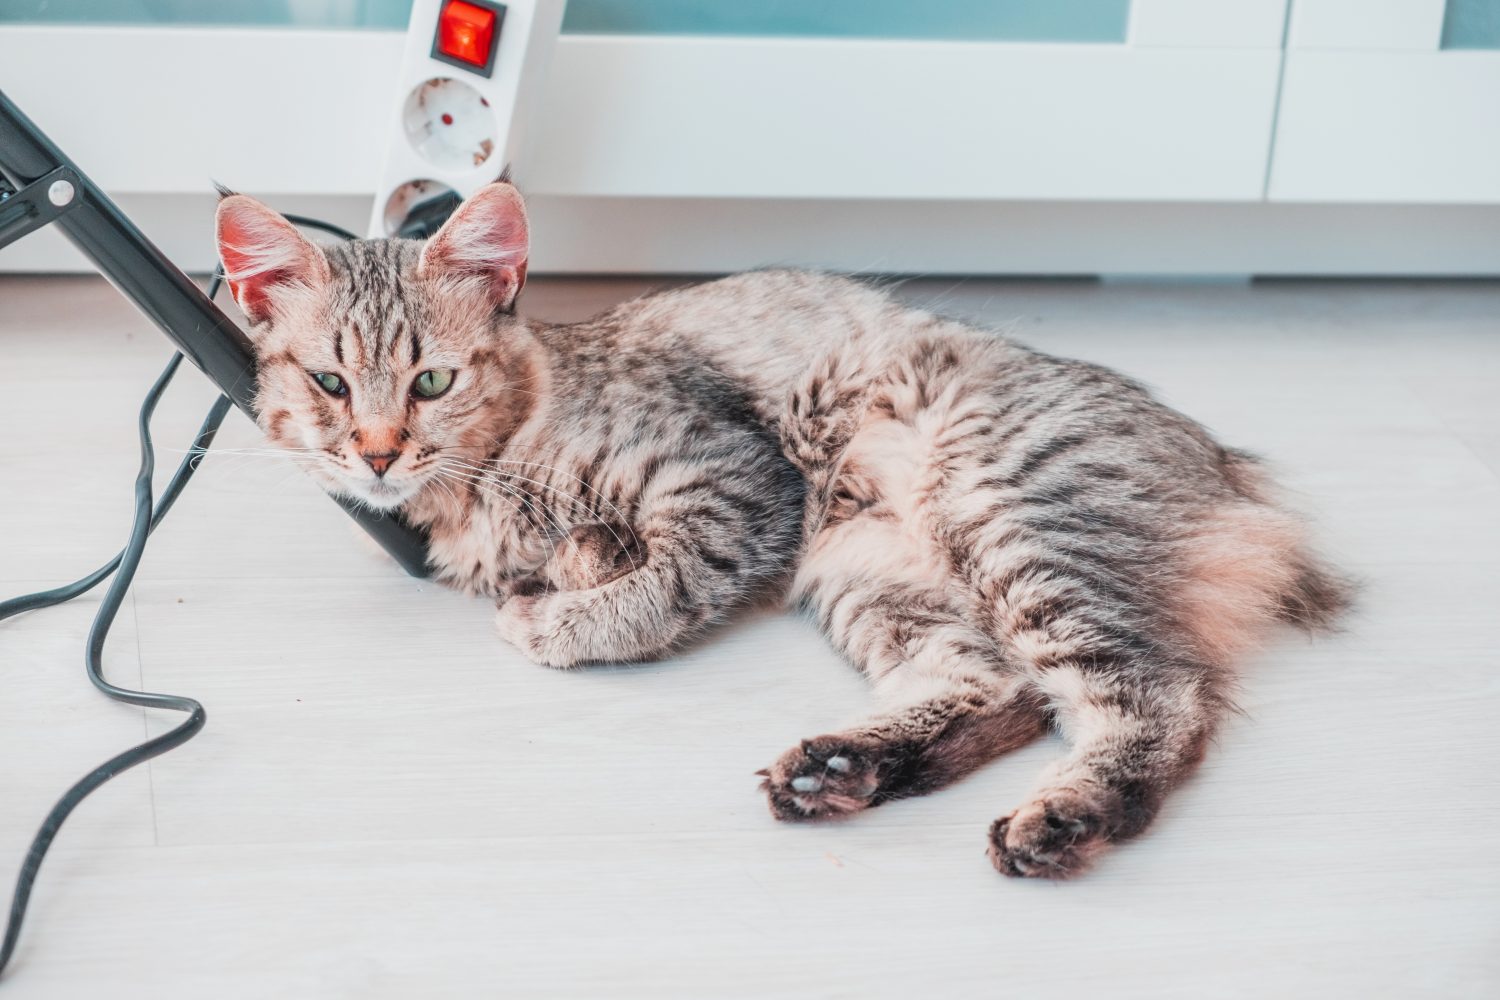 Il gatto sdraiato sulla gamba di un mobile della casa sembra divertito in attesa del suo giocattolo.  Felino della razza Pixie Bob.  Animale molto raro ed esotico imparentato con la lince iberica spagnola.  Riposa in pace.